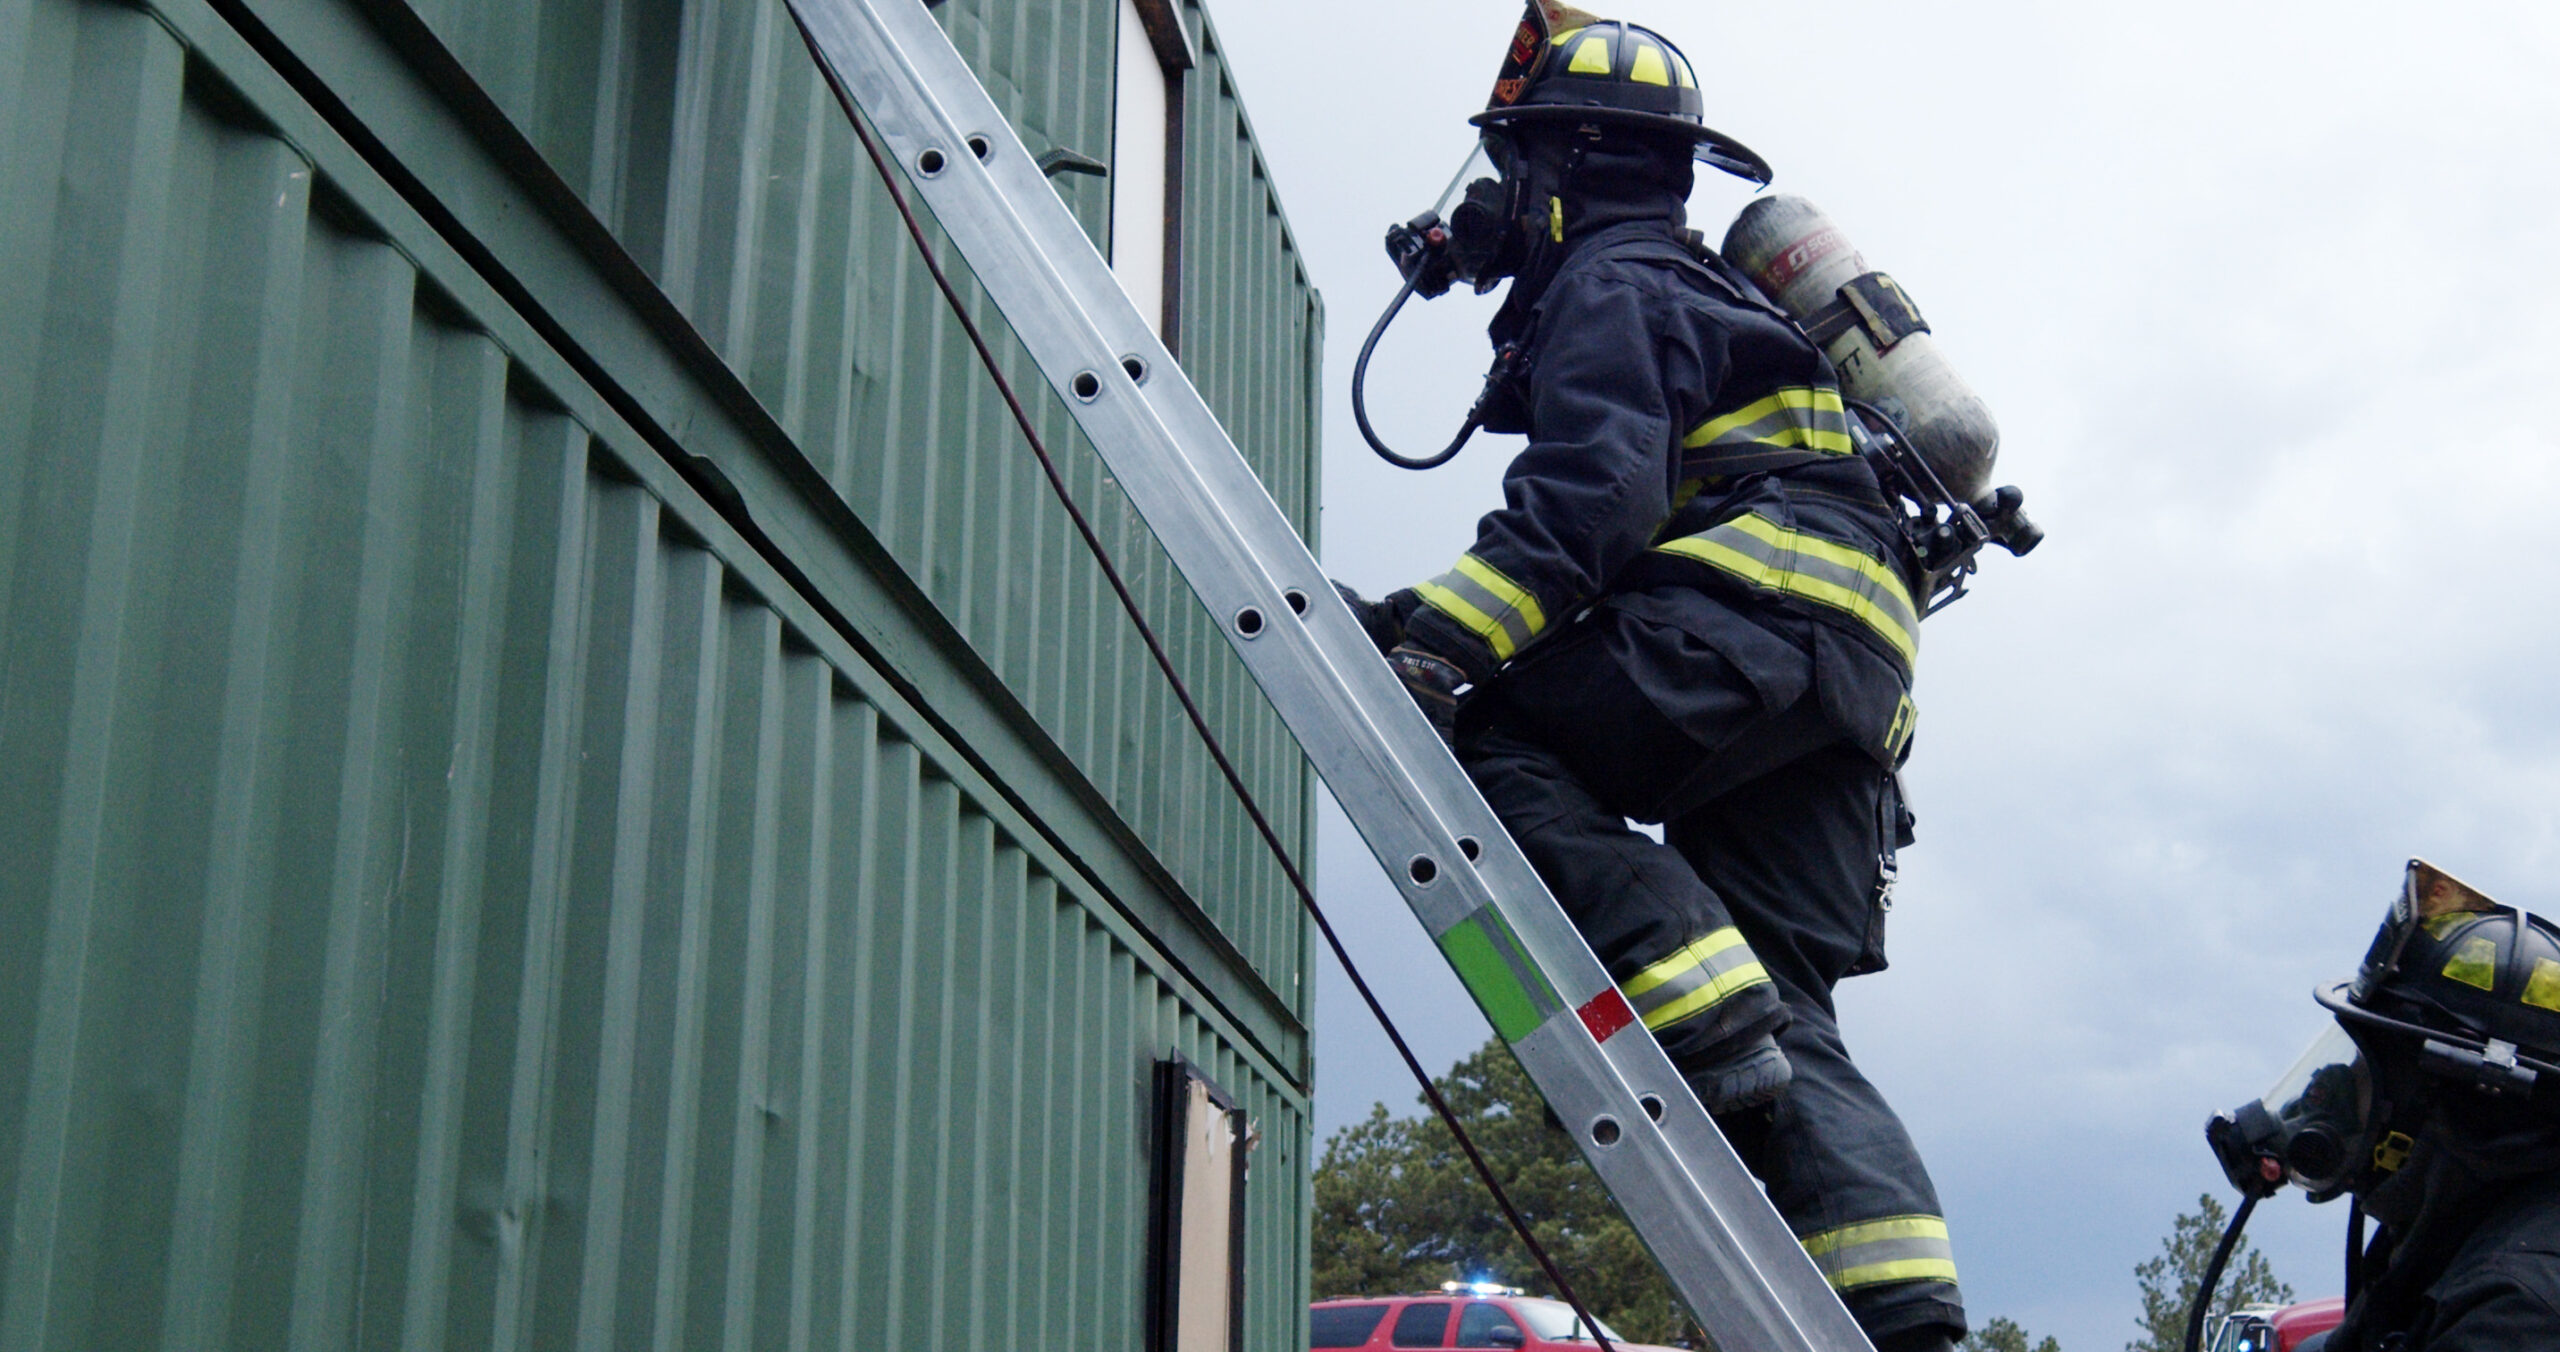 Firefighter climbing a ladder